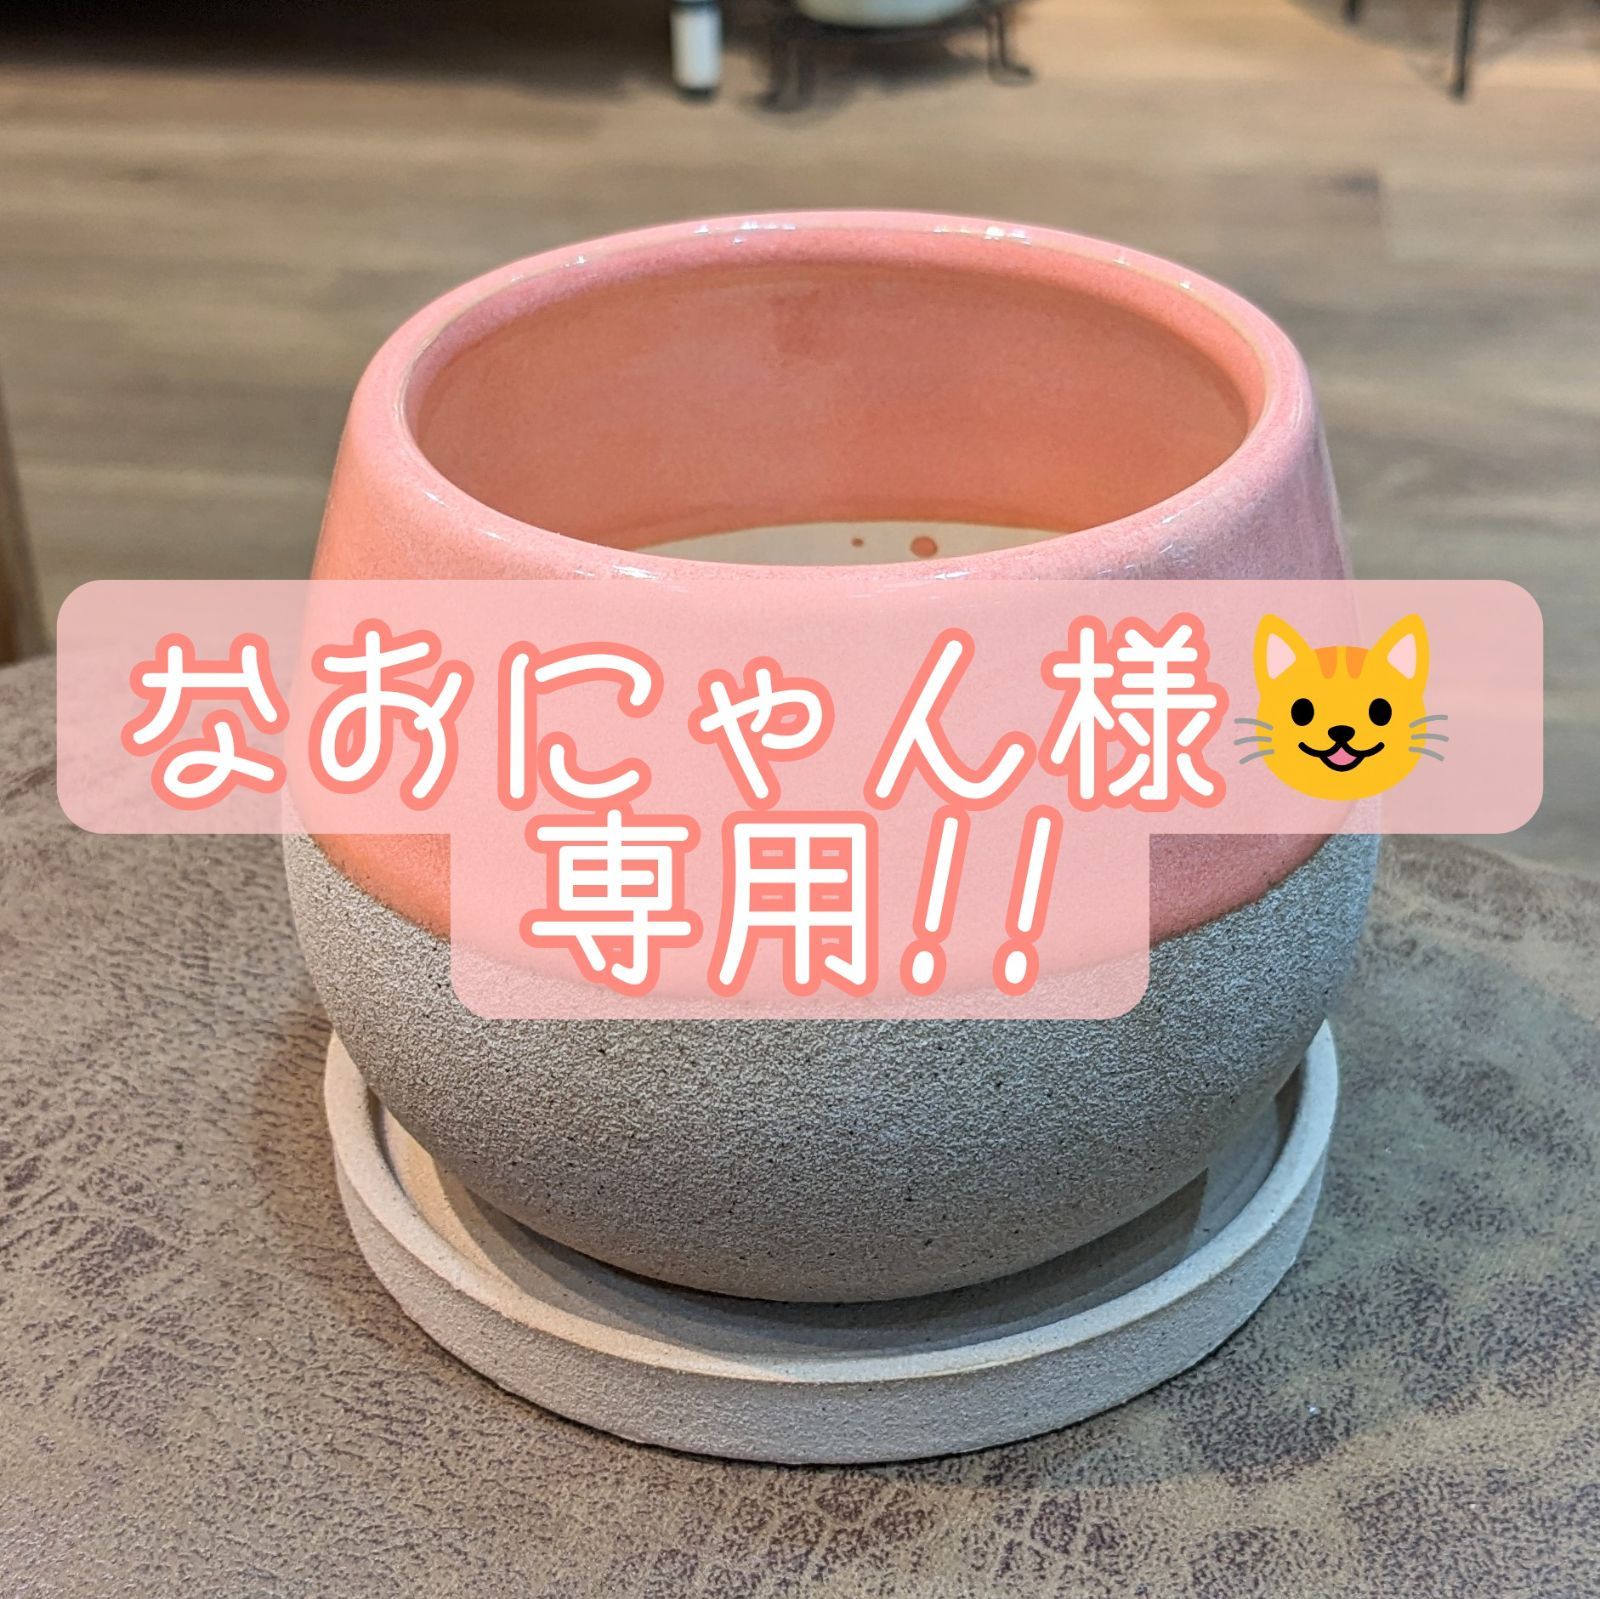 なおにゃん様 専用!! - 植物と犬服のお店NOKO's - メルカリ